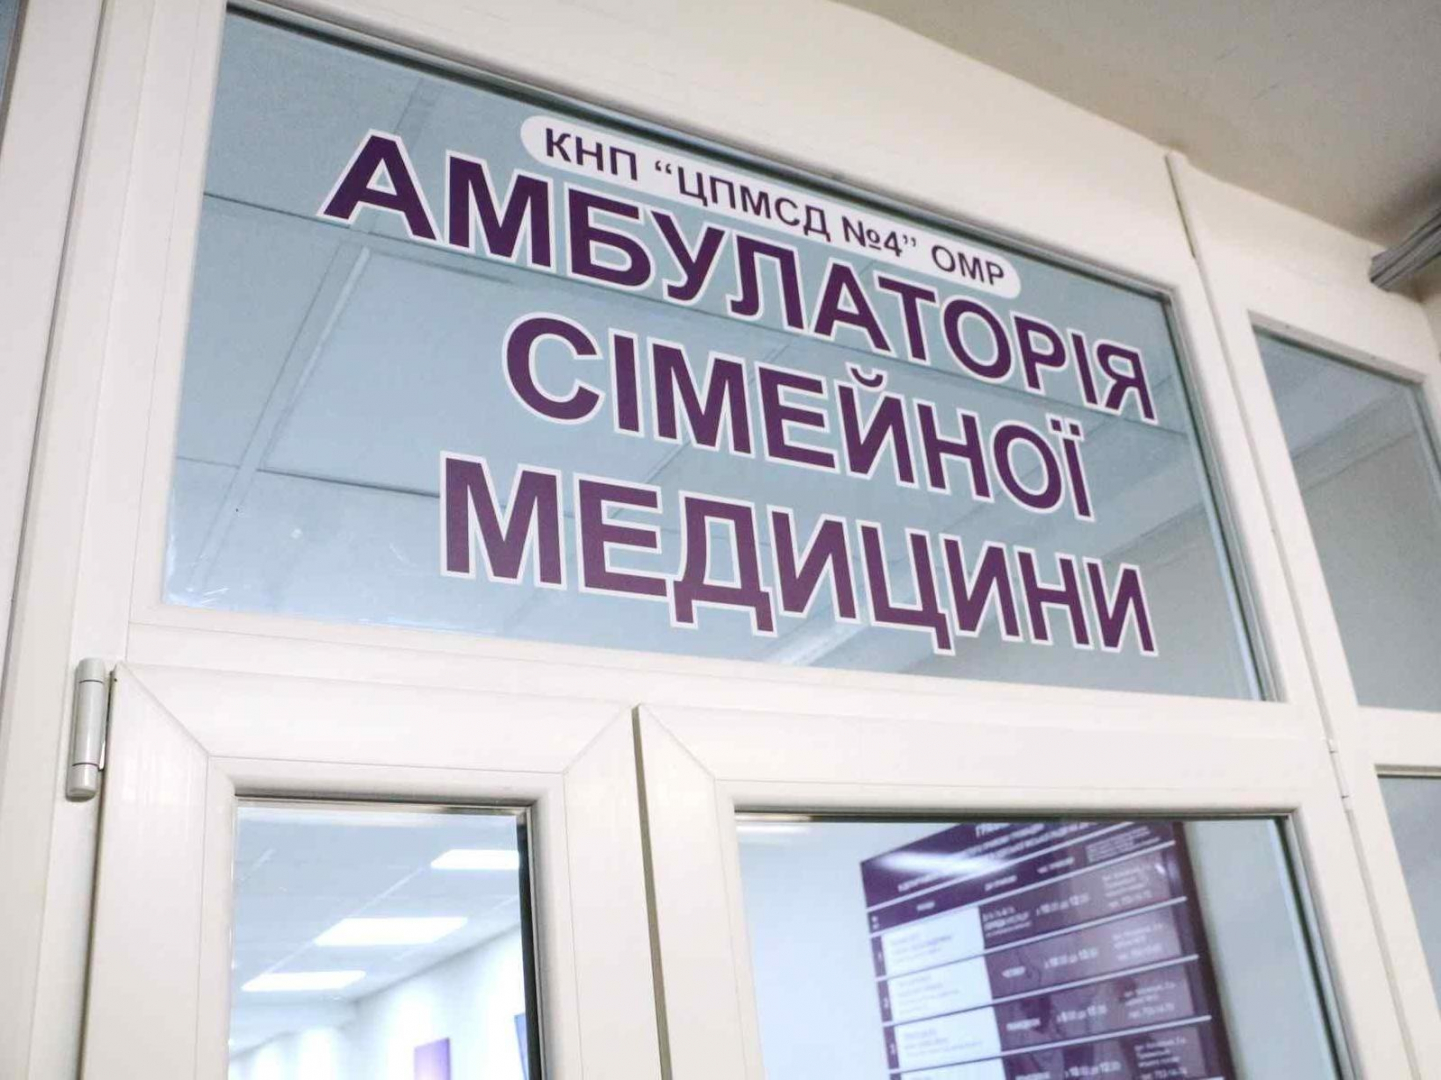 Стаття В Одессе отремонтировали семейные амбулатории в нежно-фиолетовых тонах. Фото Ранкове місто. Одеса